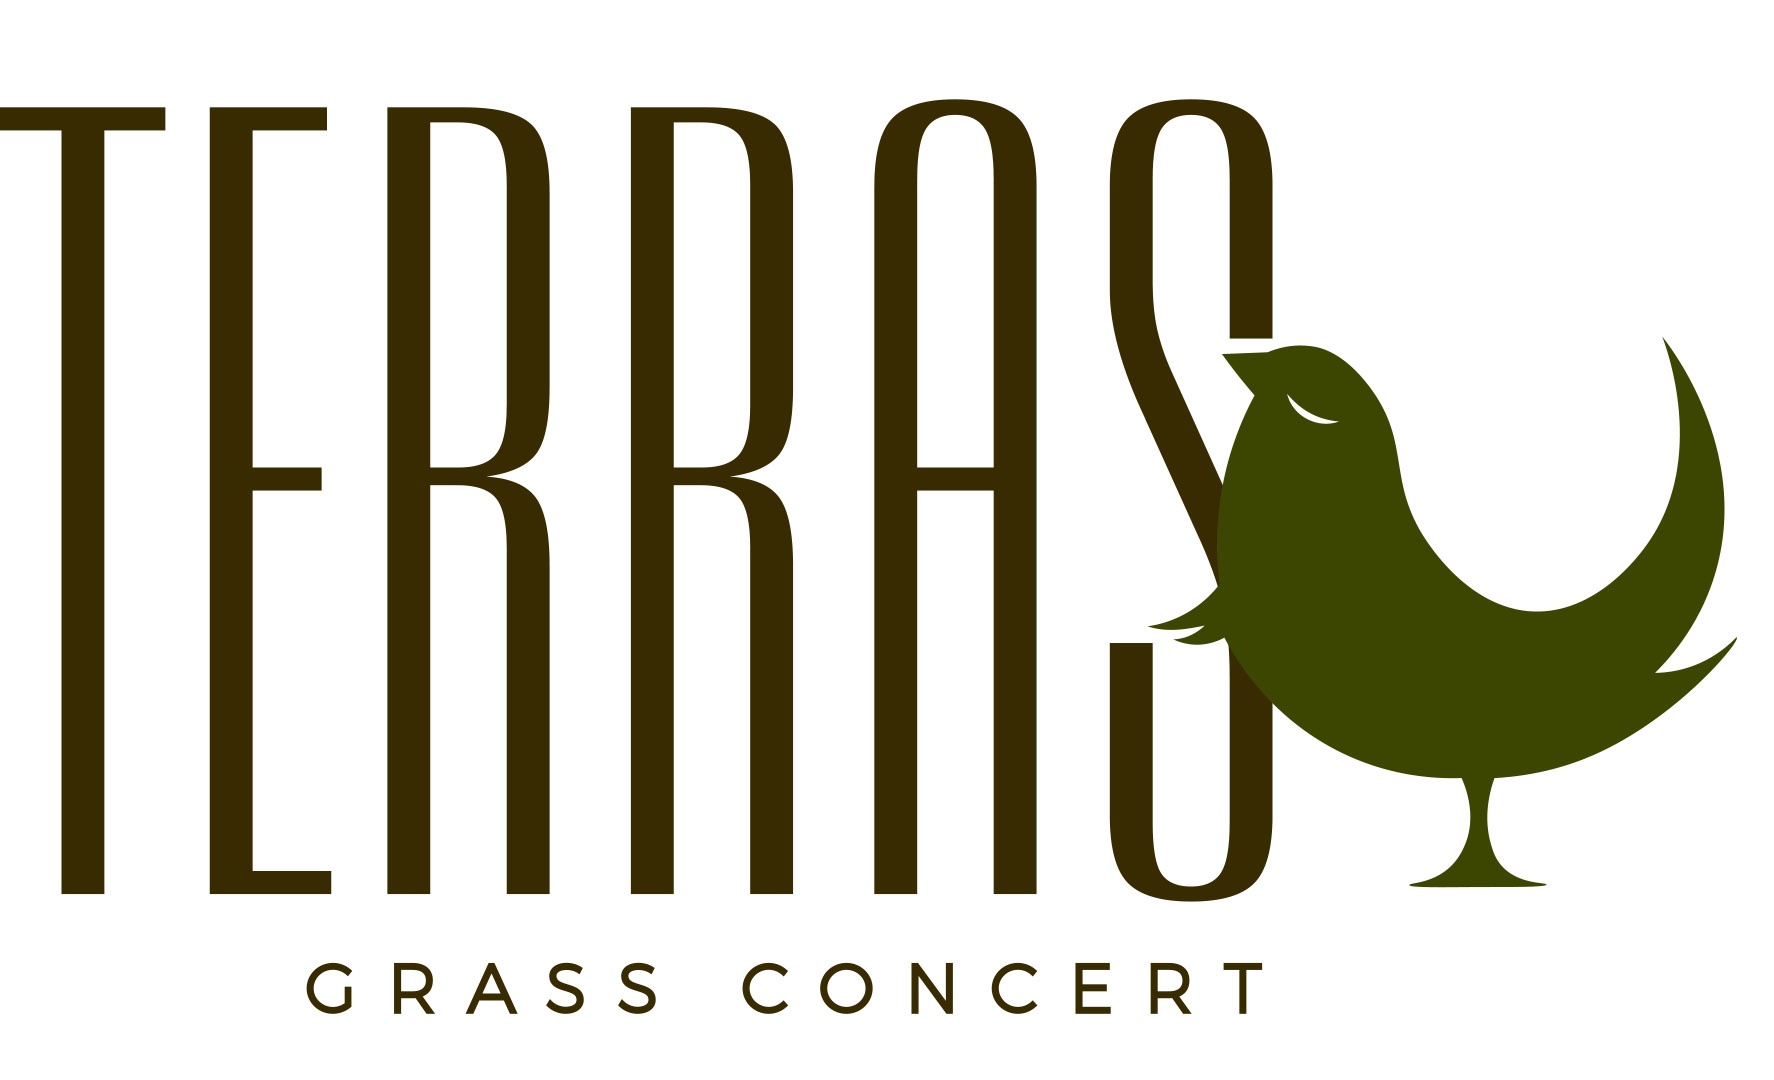 Terras Grass Concert